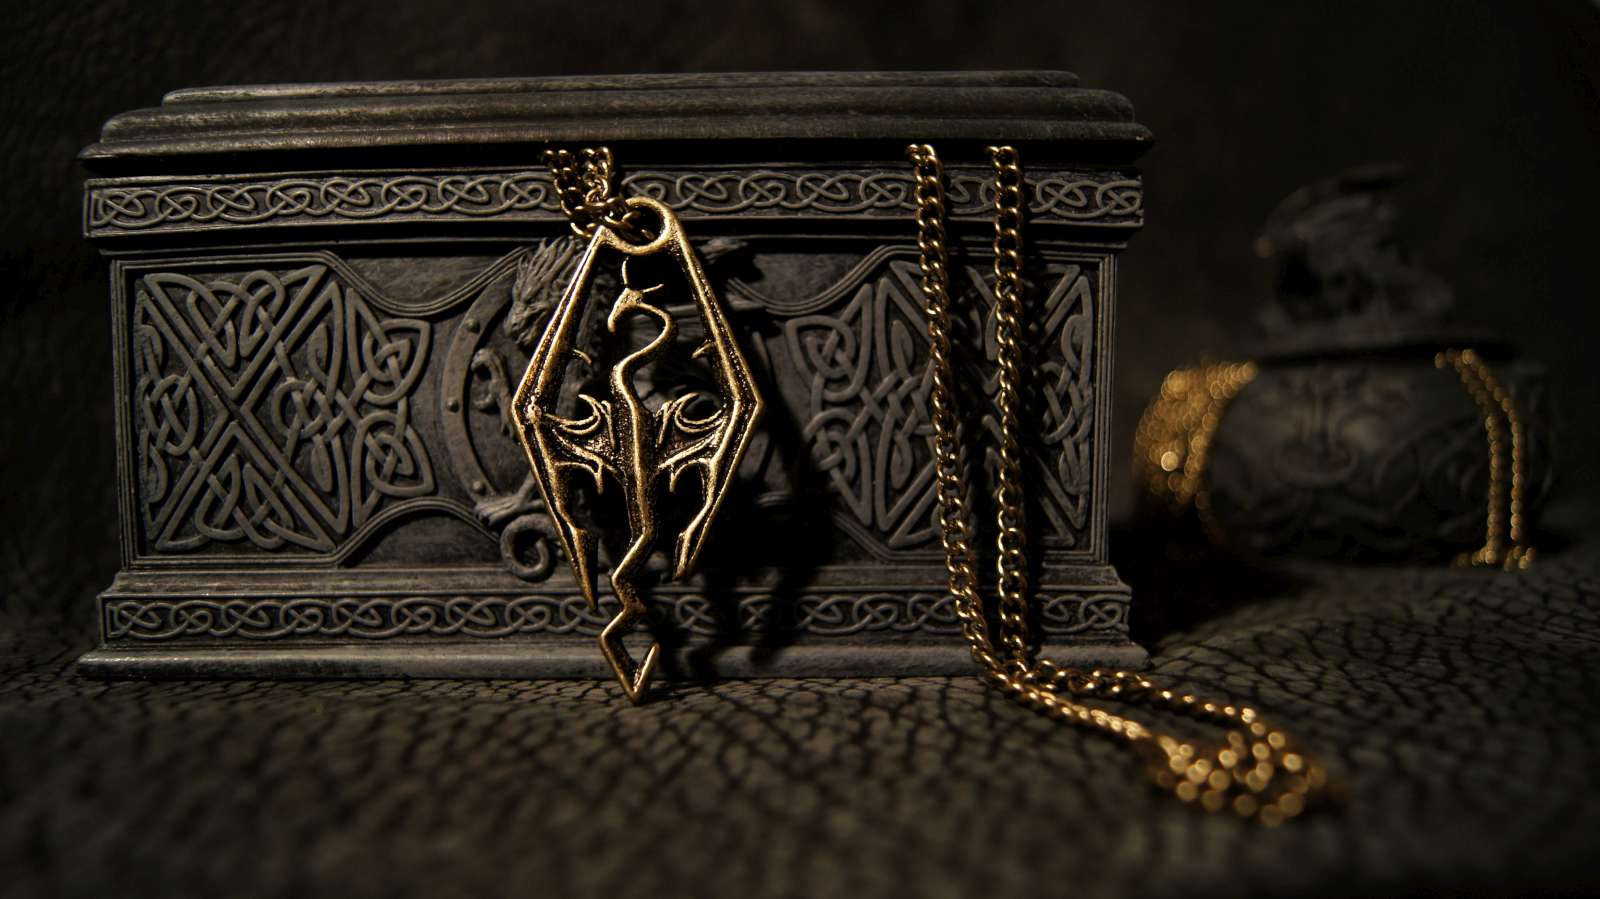 Dragonborn Skyrim Pendant Of The Imperial Legion Gold